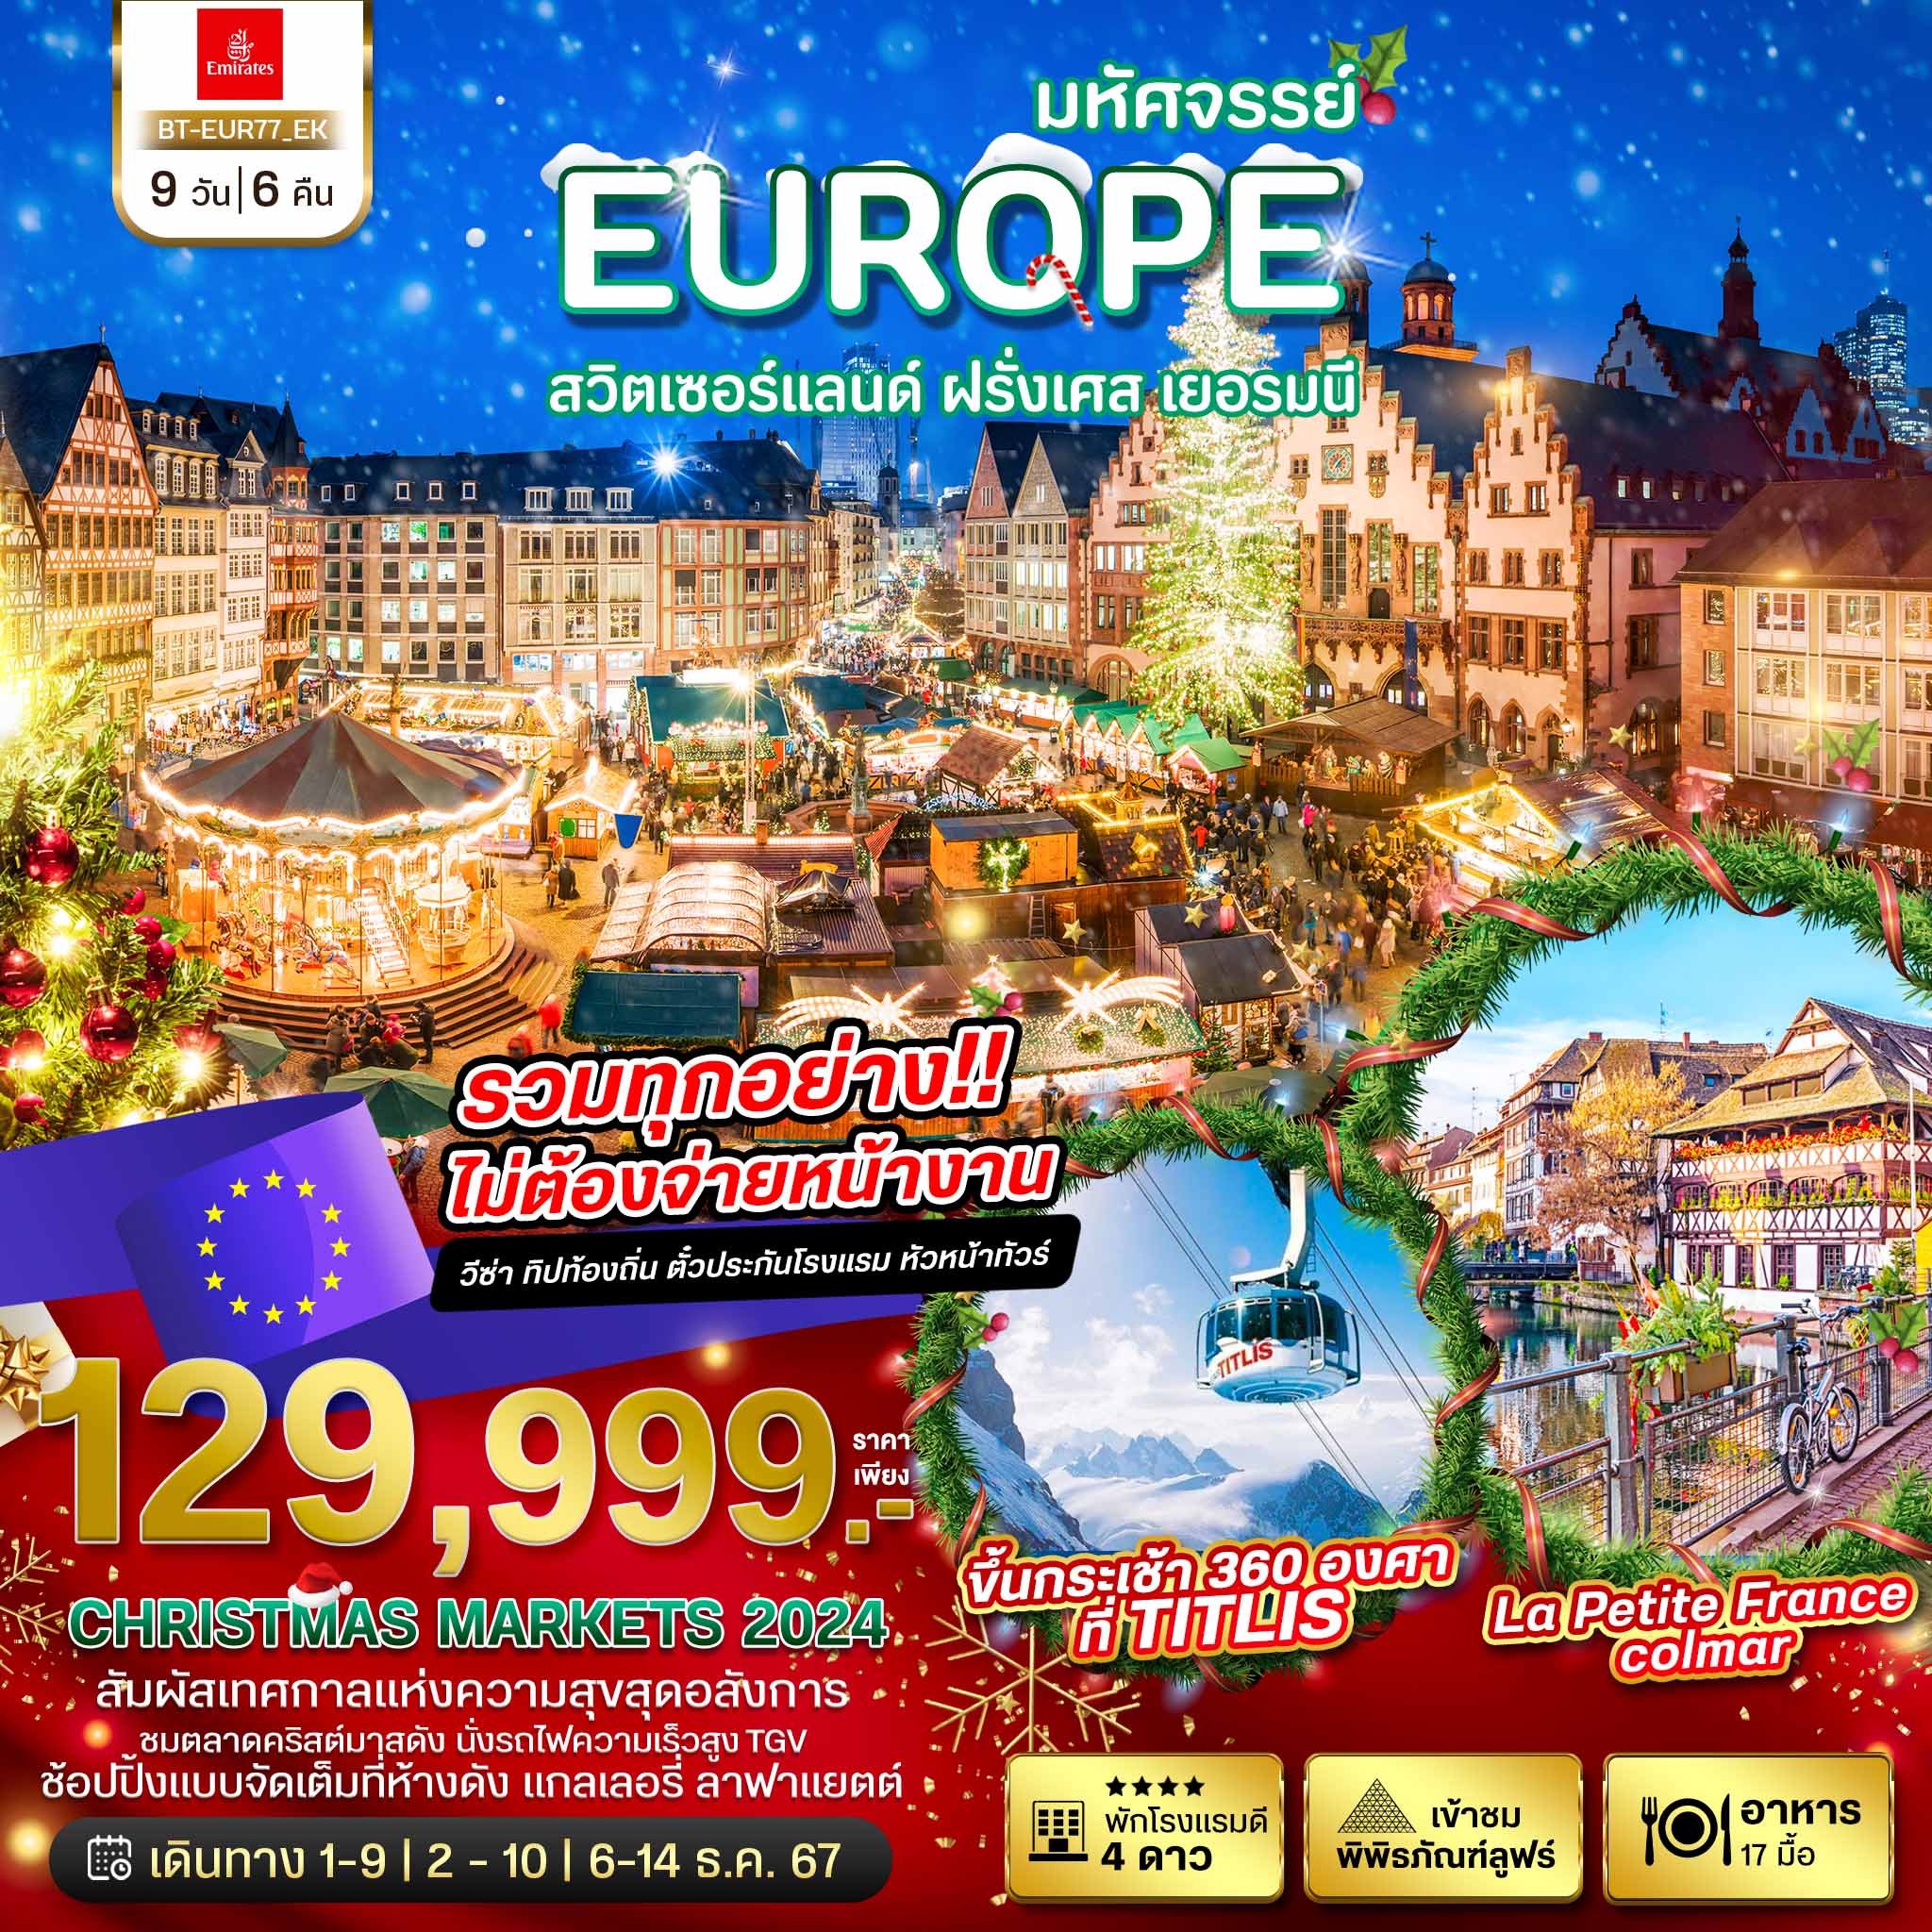 ทัวร์ยุโรป มหัศจรรย์... สวิส เยอรมัน ฝรั่งเศส Christmas Markets 2024 9วัน 6คืน EK